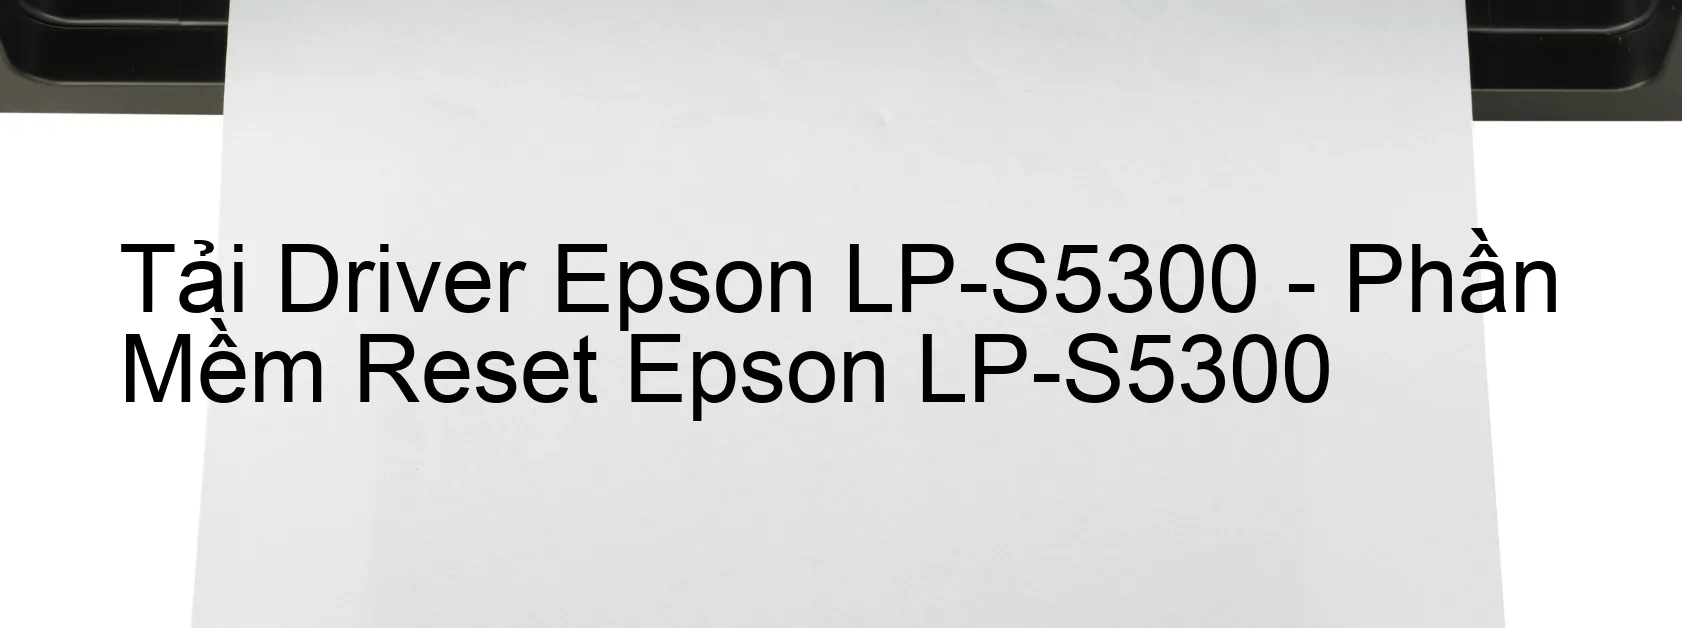 Driver Epson LP-S5300, Phần Mềm Reset Epson LP-S5300